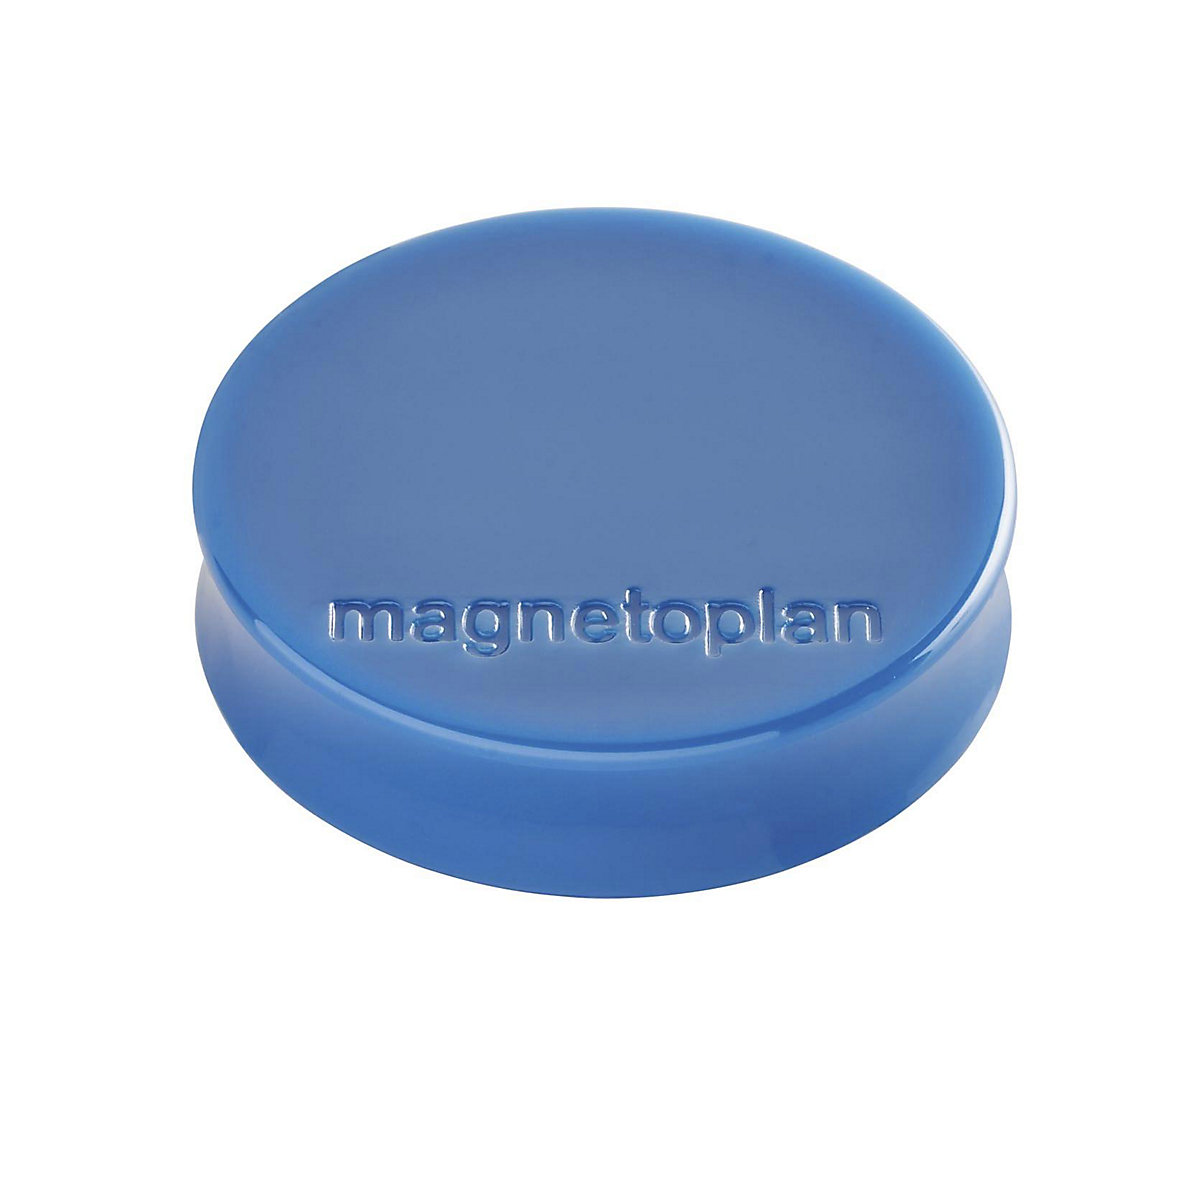 Plot magnétique Ergo – magnetoplan, Ø 30 mm, lot de 60, bleu foncé